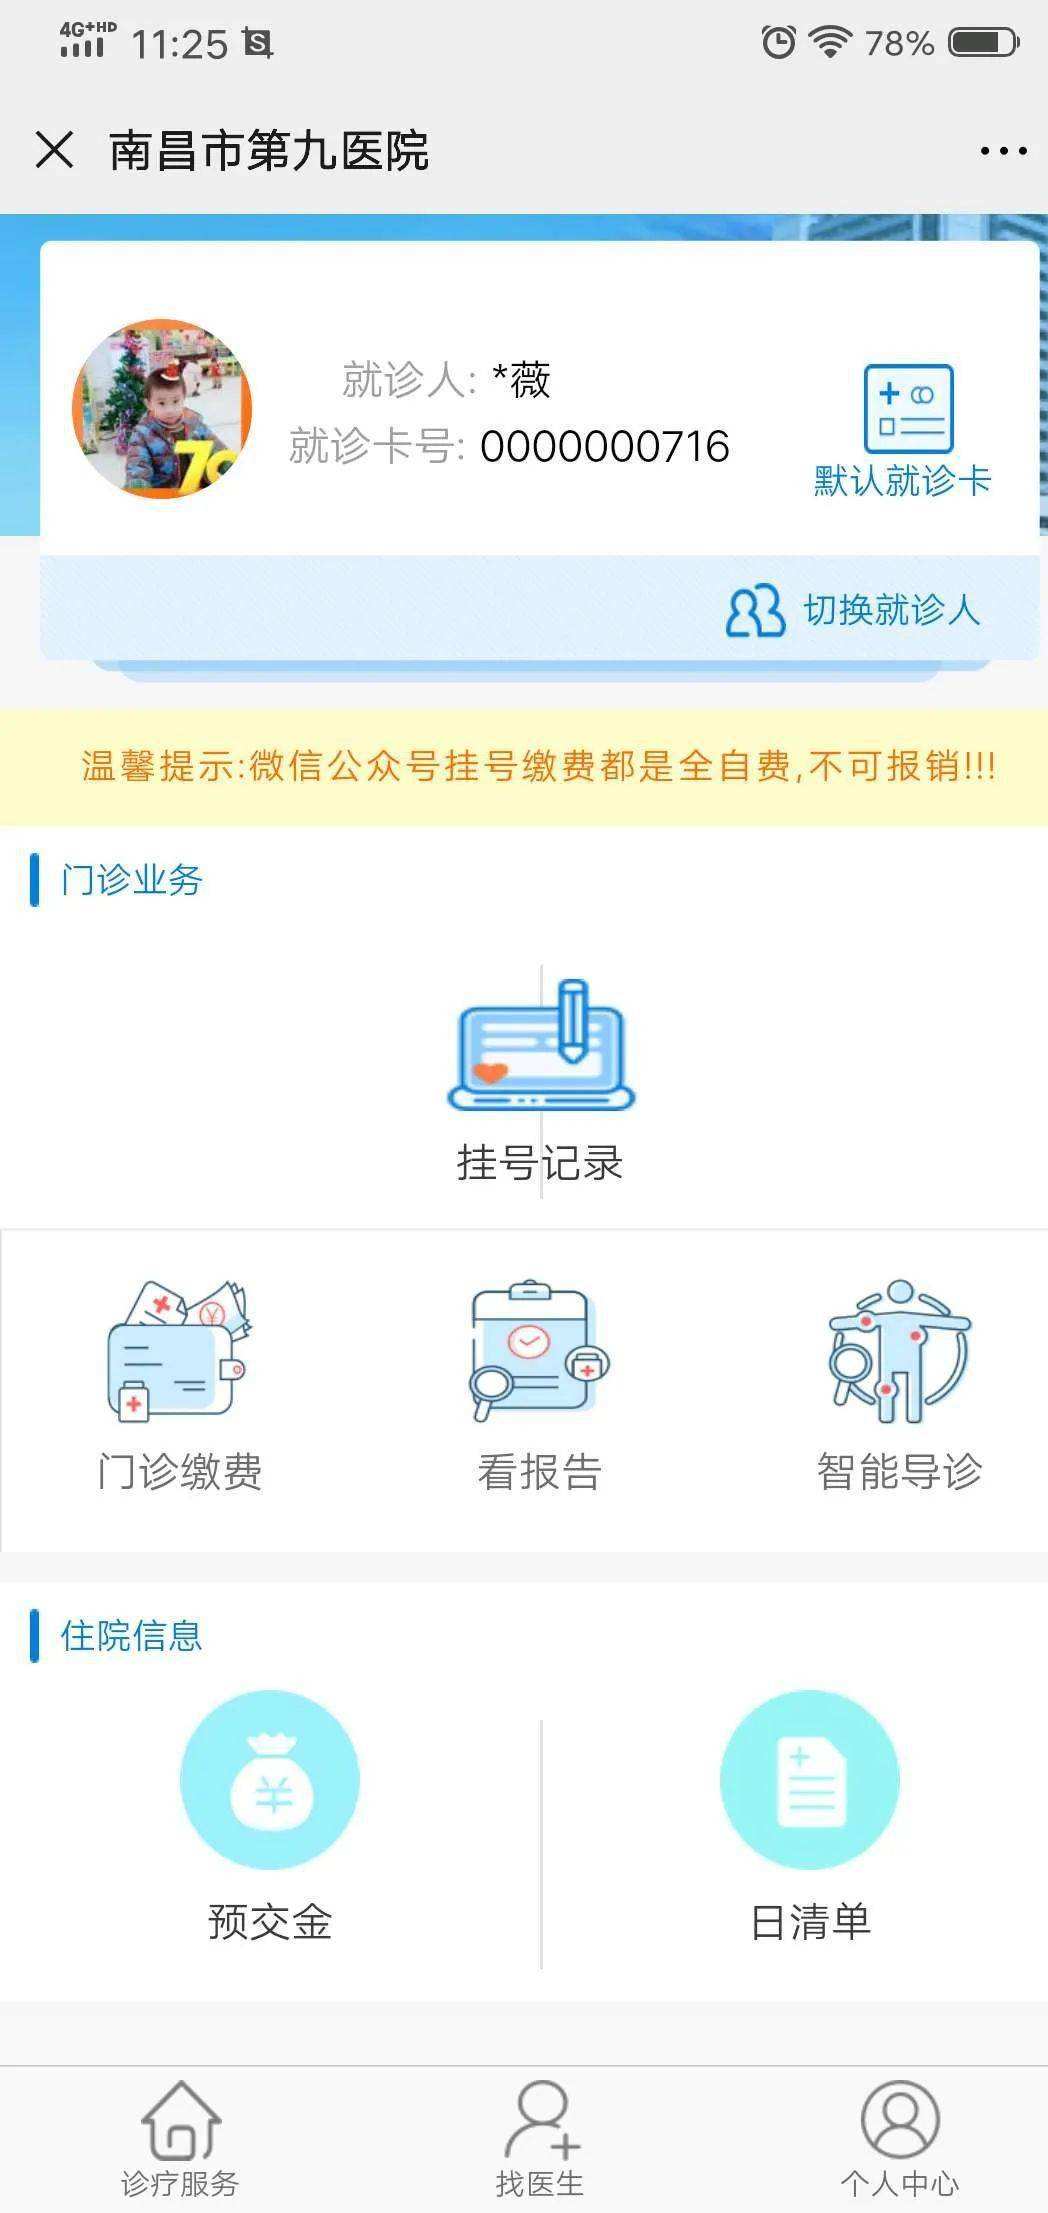 包含北京电力医院号贩子挂号,安全快速有效联系方式优质服务